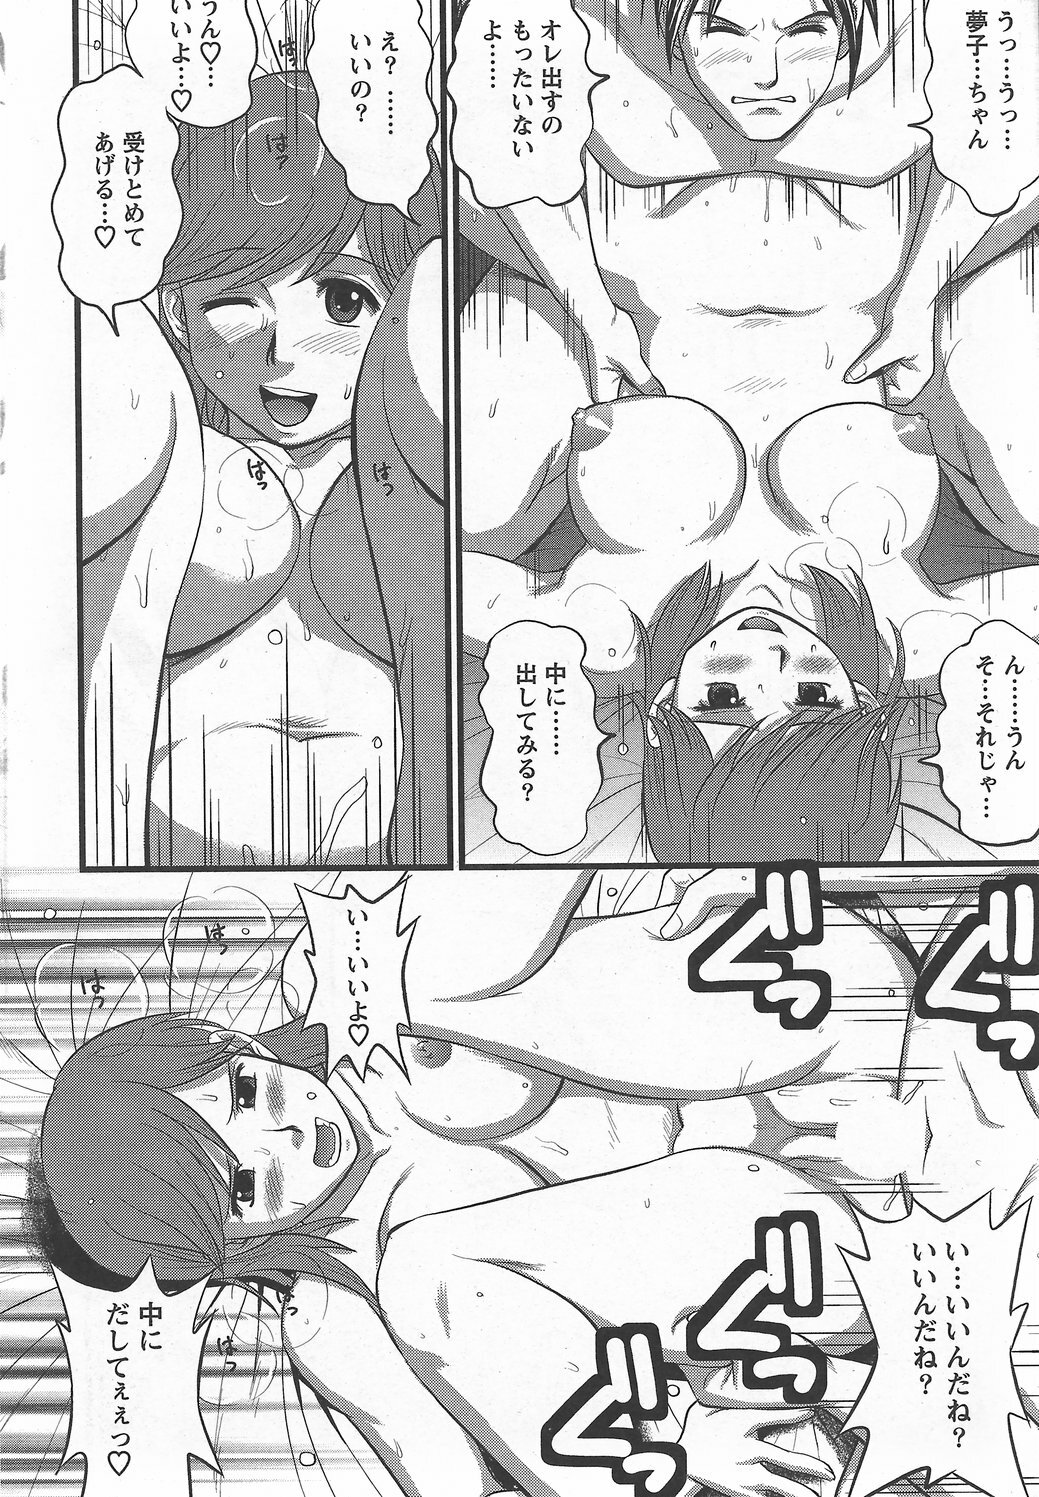 Haken no Muuko-san 6 [Saigado] page 19 full